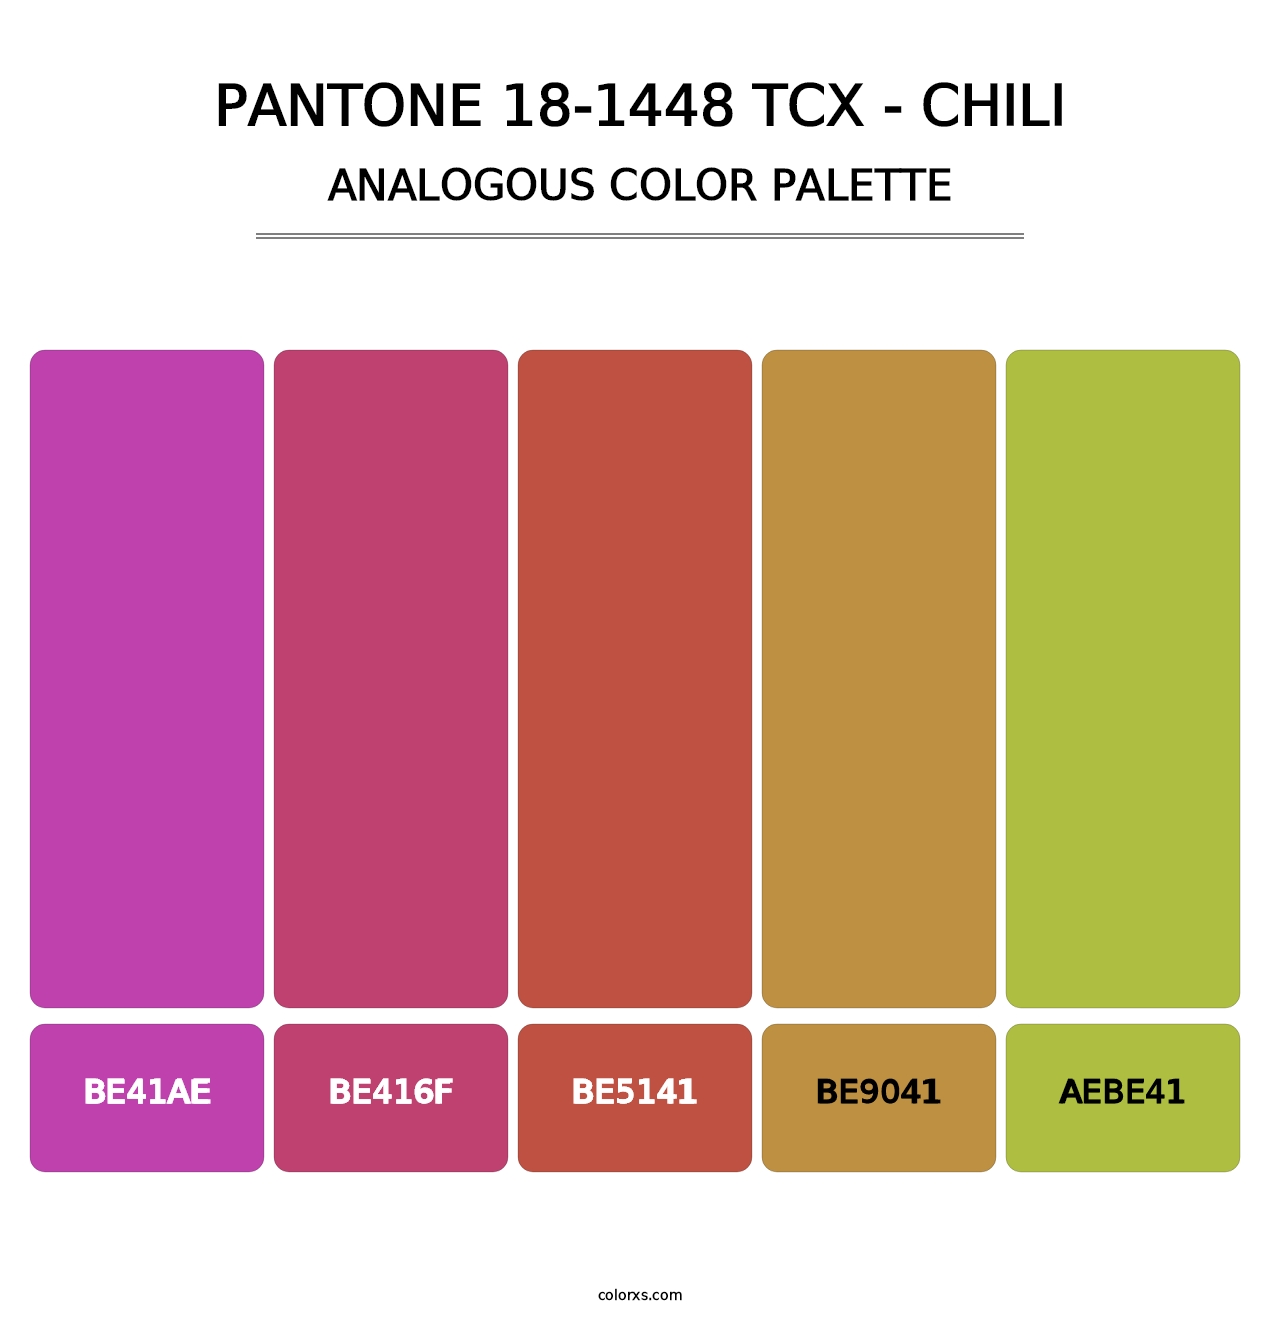 PANTONE 18-1448 TCX - Chili - Analogous Color Palette